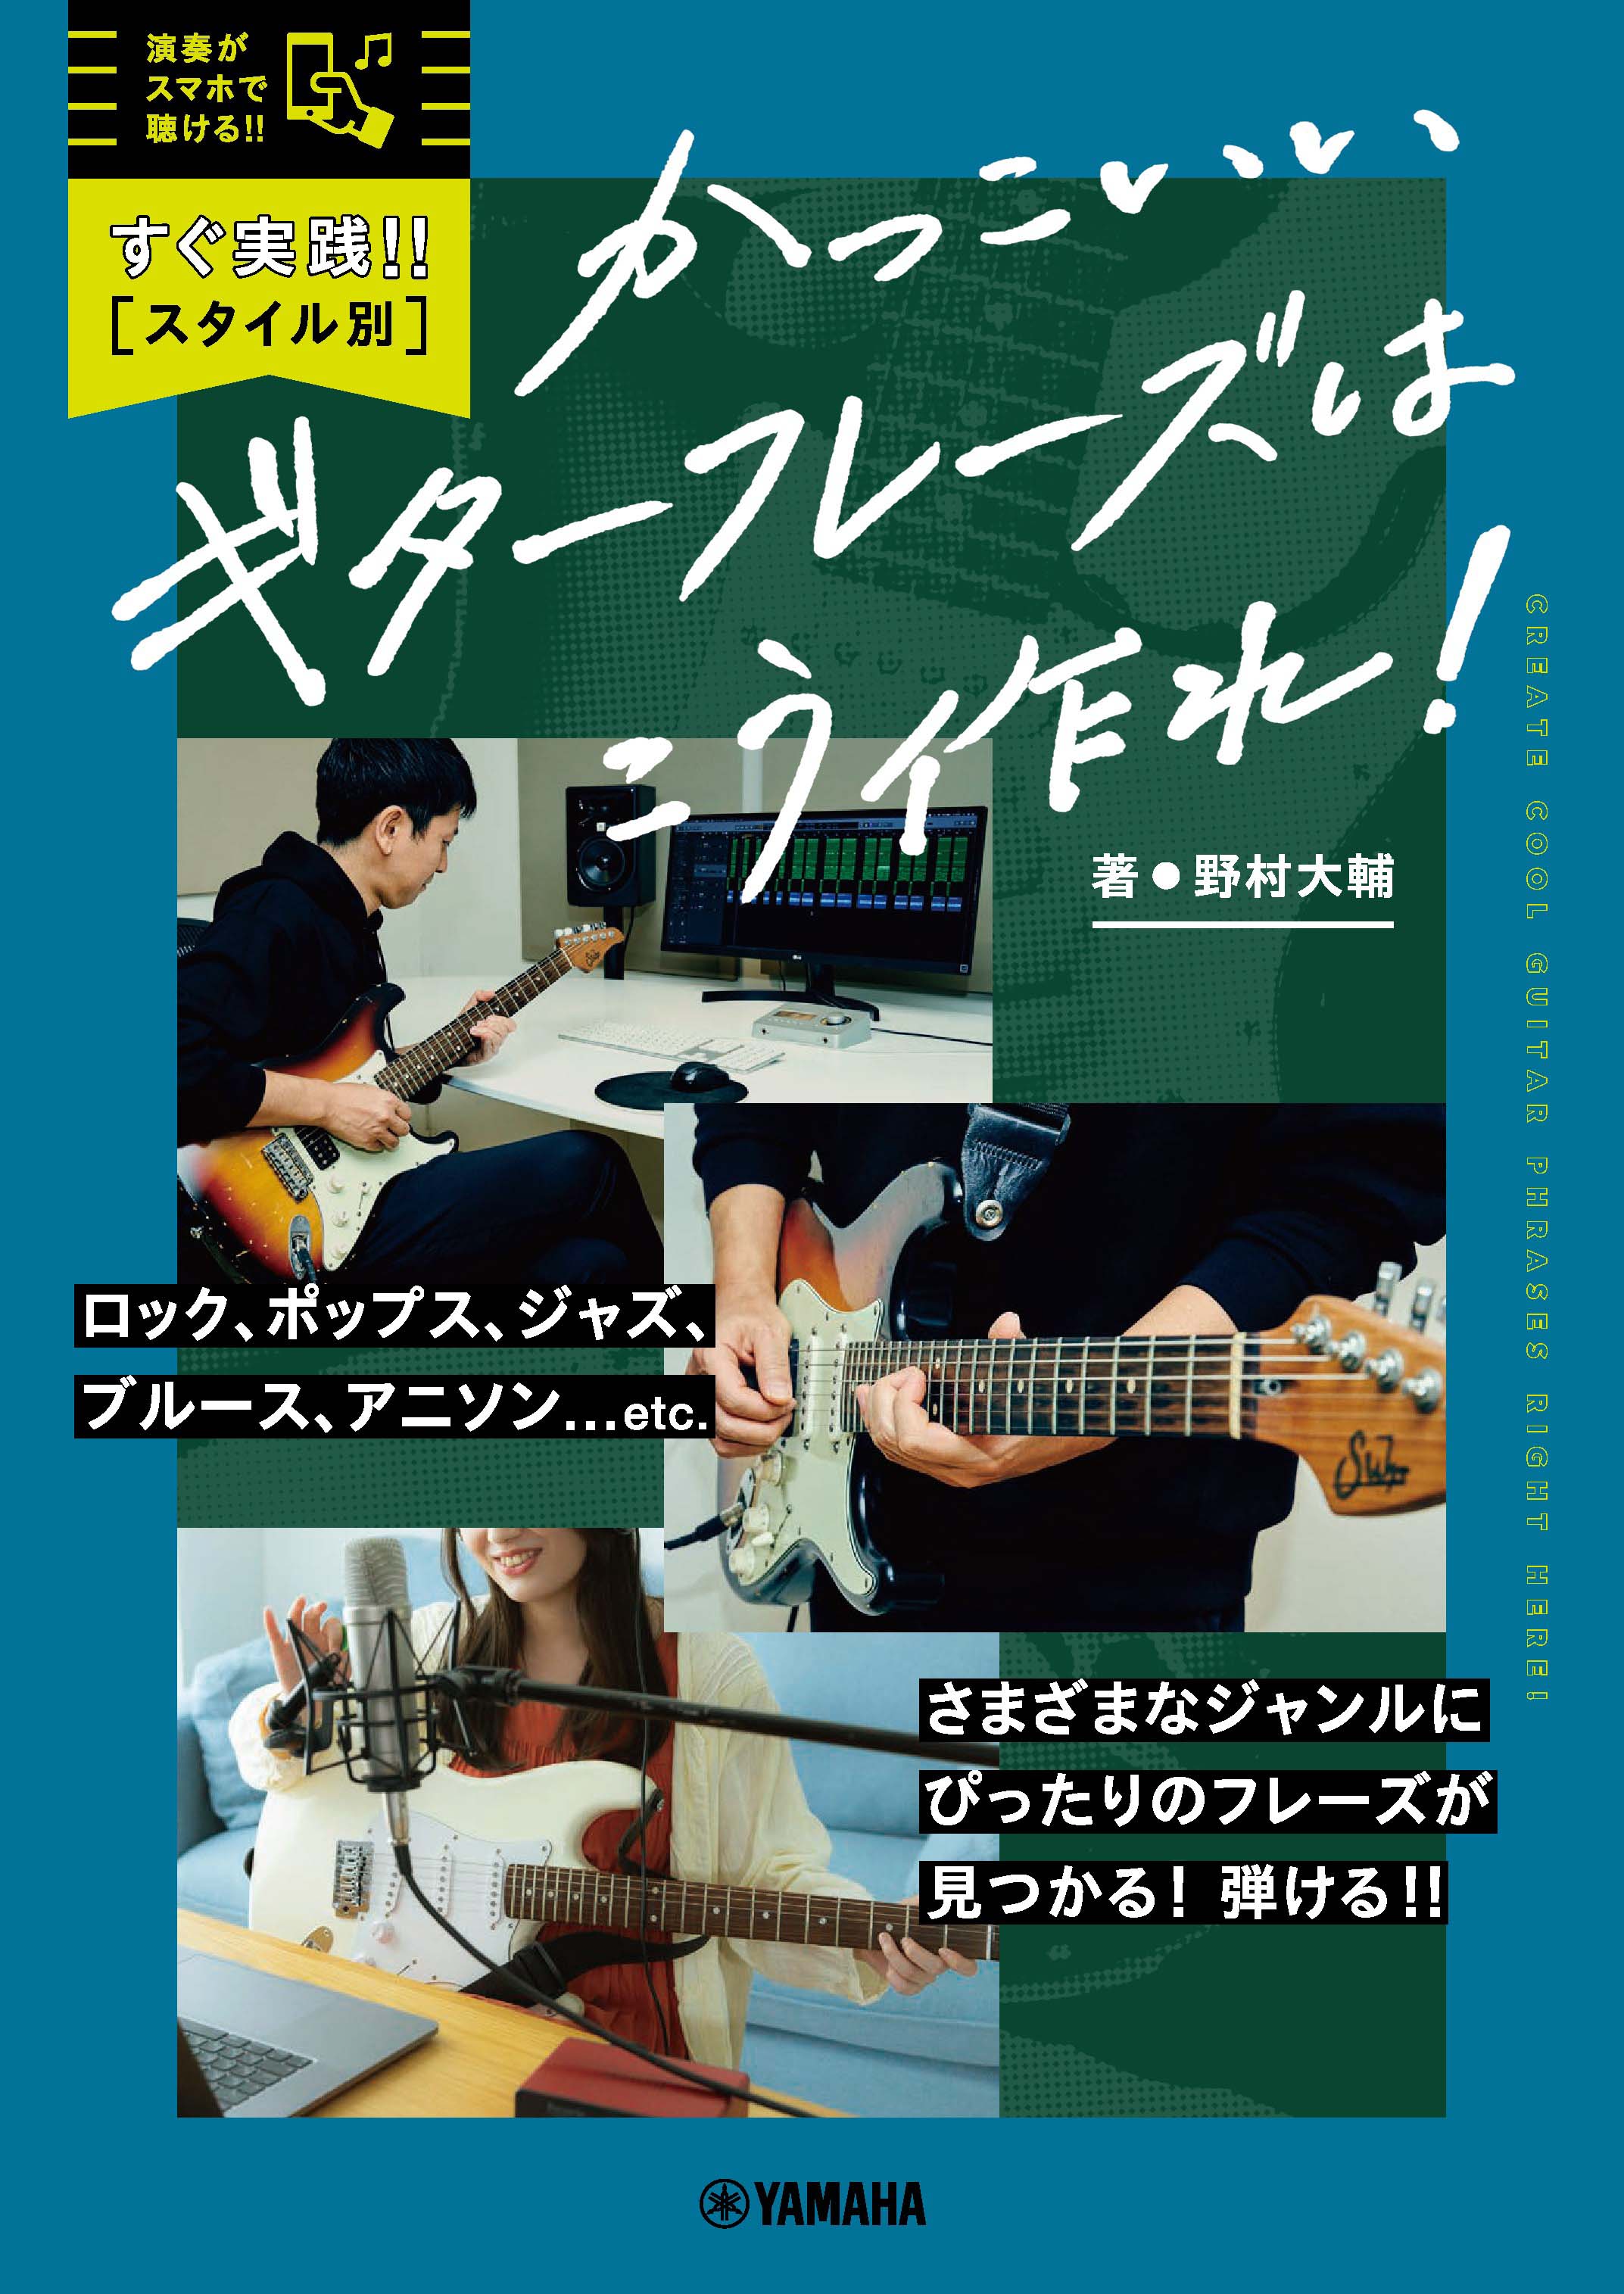 すぐ実践 スタイル別 かっこいいギターフレーズはこう作れ 2月18日発売 Newscast